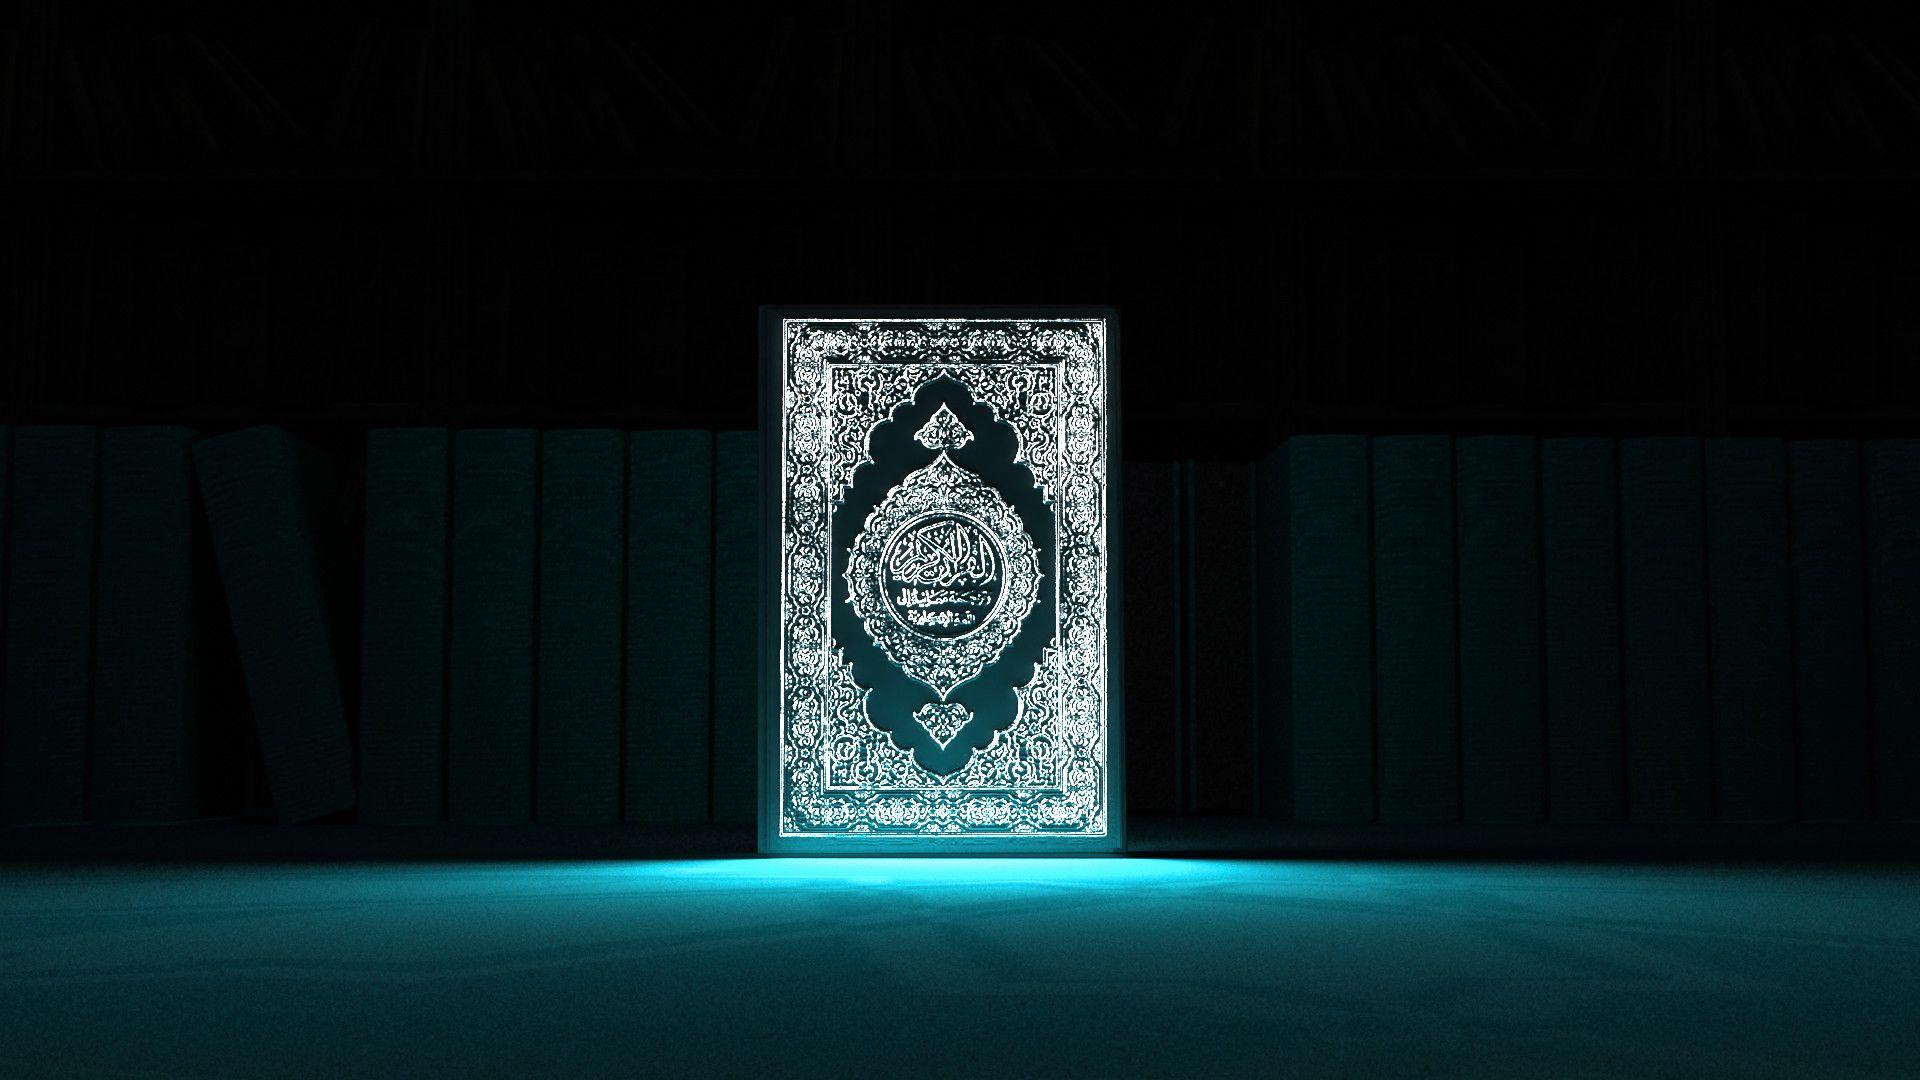 Hình nền Quran đẹp: Hình nền Quran đẹp là bộ sưu tập tuyệt vời dành cho những bạn yêu thích sự hoàn hảo và tinh tế. Hãy để tâm hồn bạn thả hồn trong những bức tranh tuyệt đẹp này với đầy đủ sự dẫn dắt của những câu thánh kinh trong Al Quran. Chắc chắn bạn sẽ cảm thấy bình yên trong tâm hồn khi sử dụng những hình nền độc đáo này.